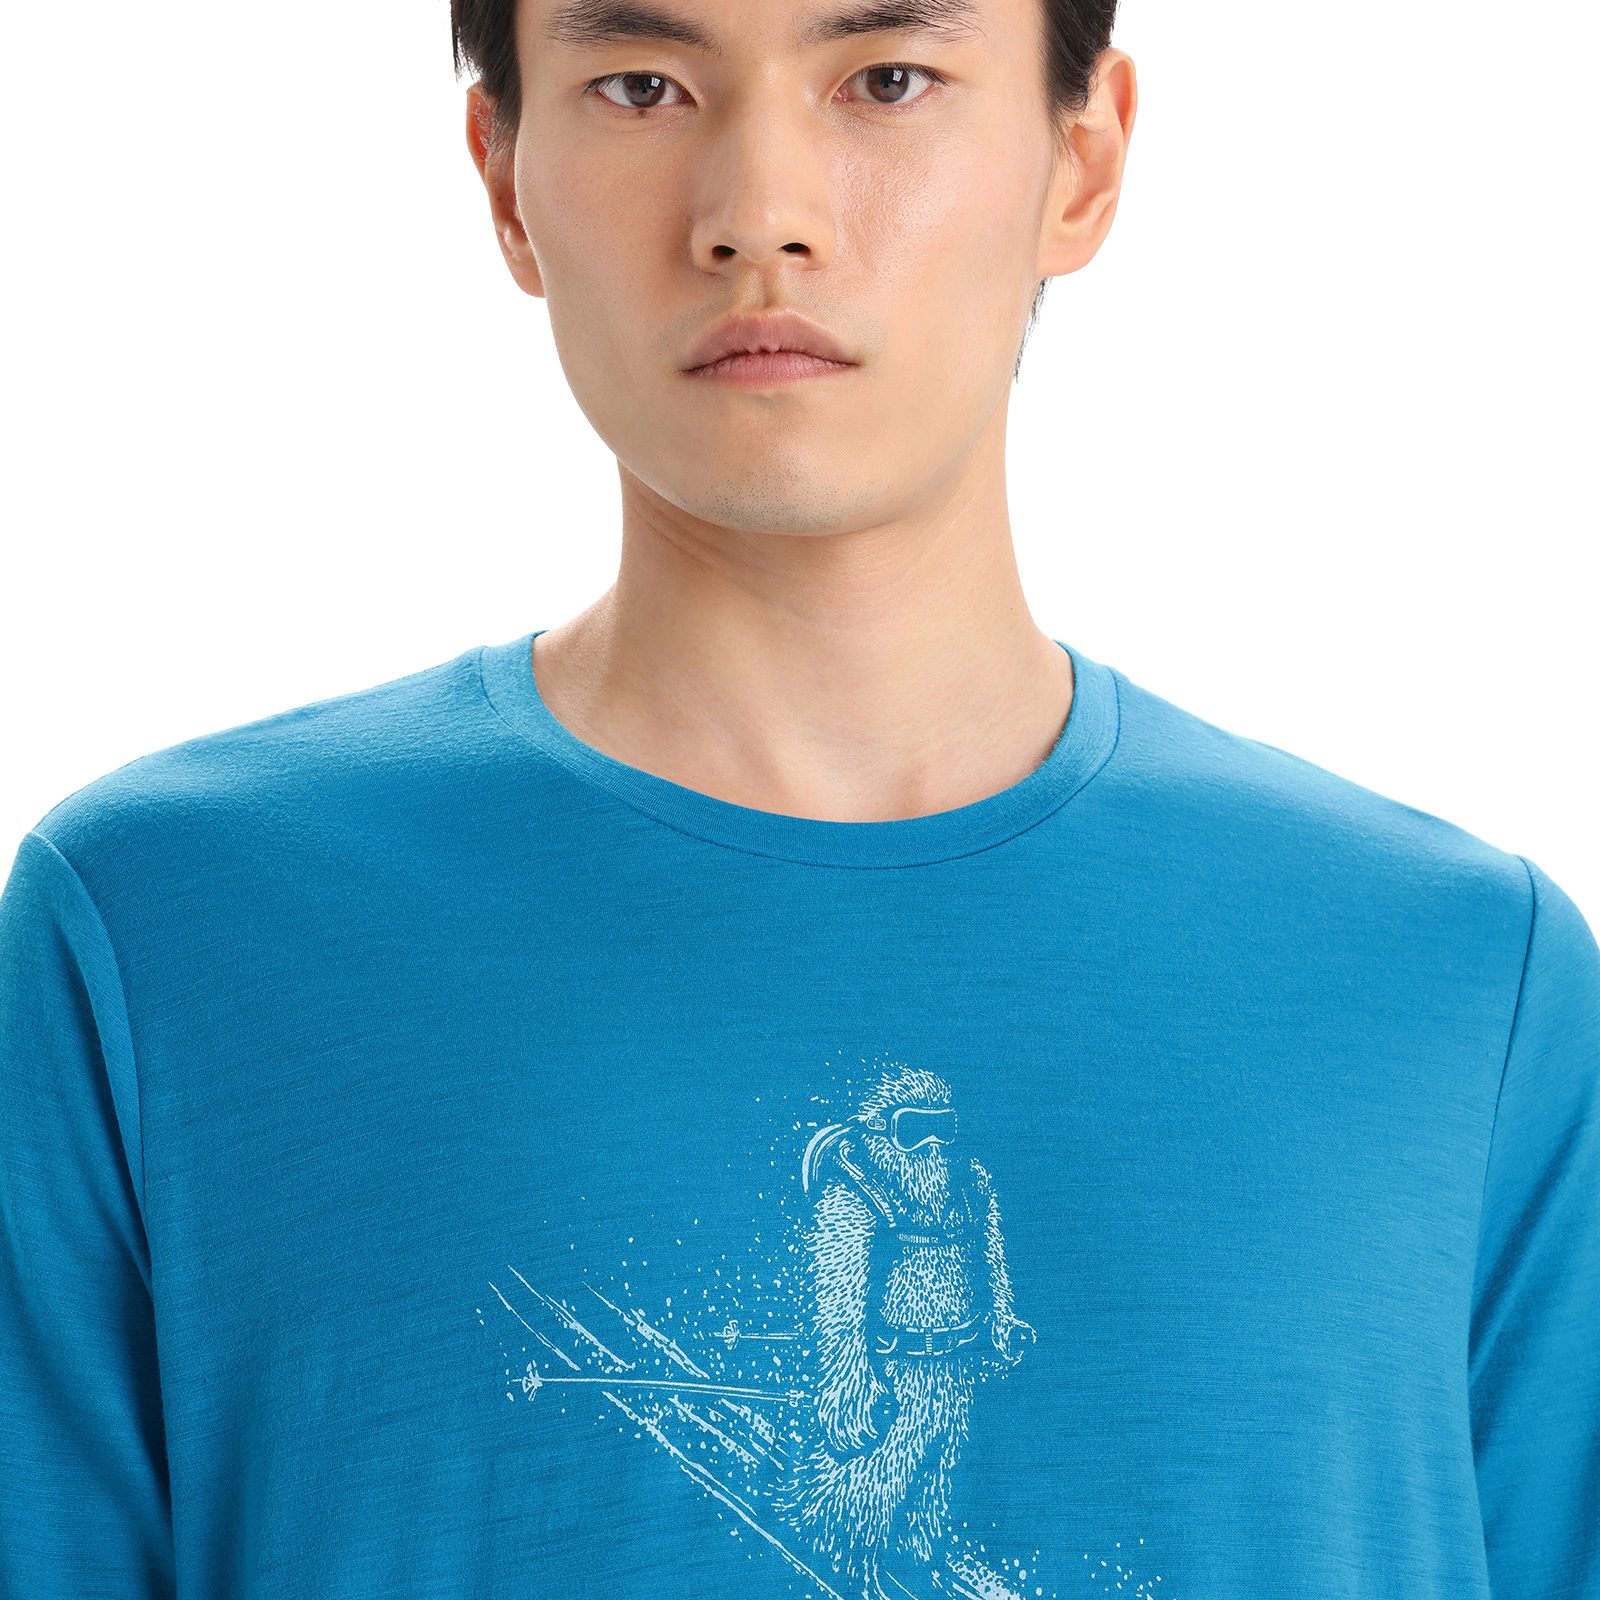 Merino Tech Lite II Long Sleeve T-Shirt Skiing Yeti - Icebreaker (US)